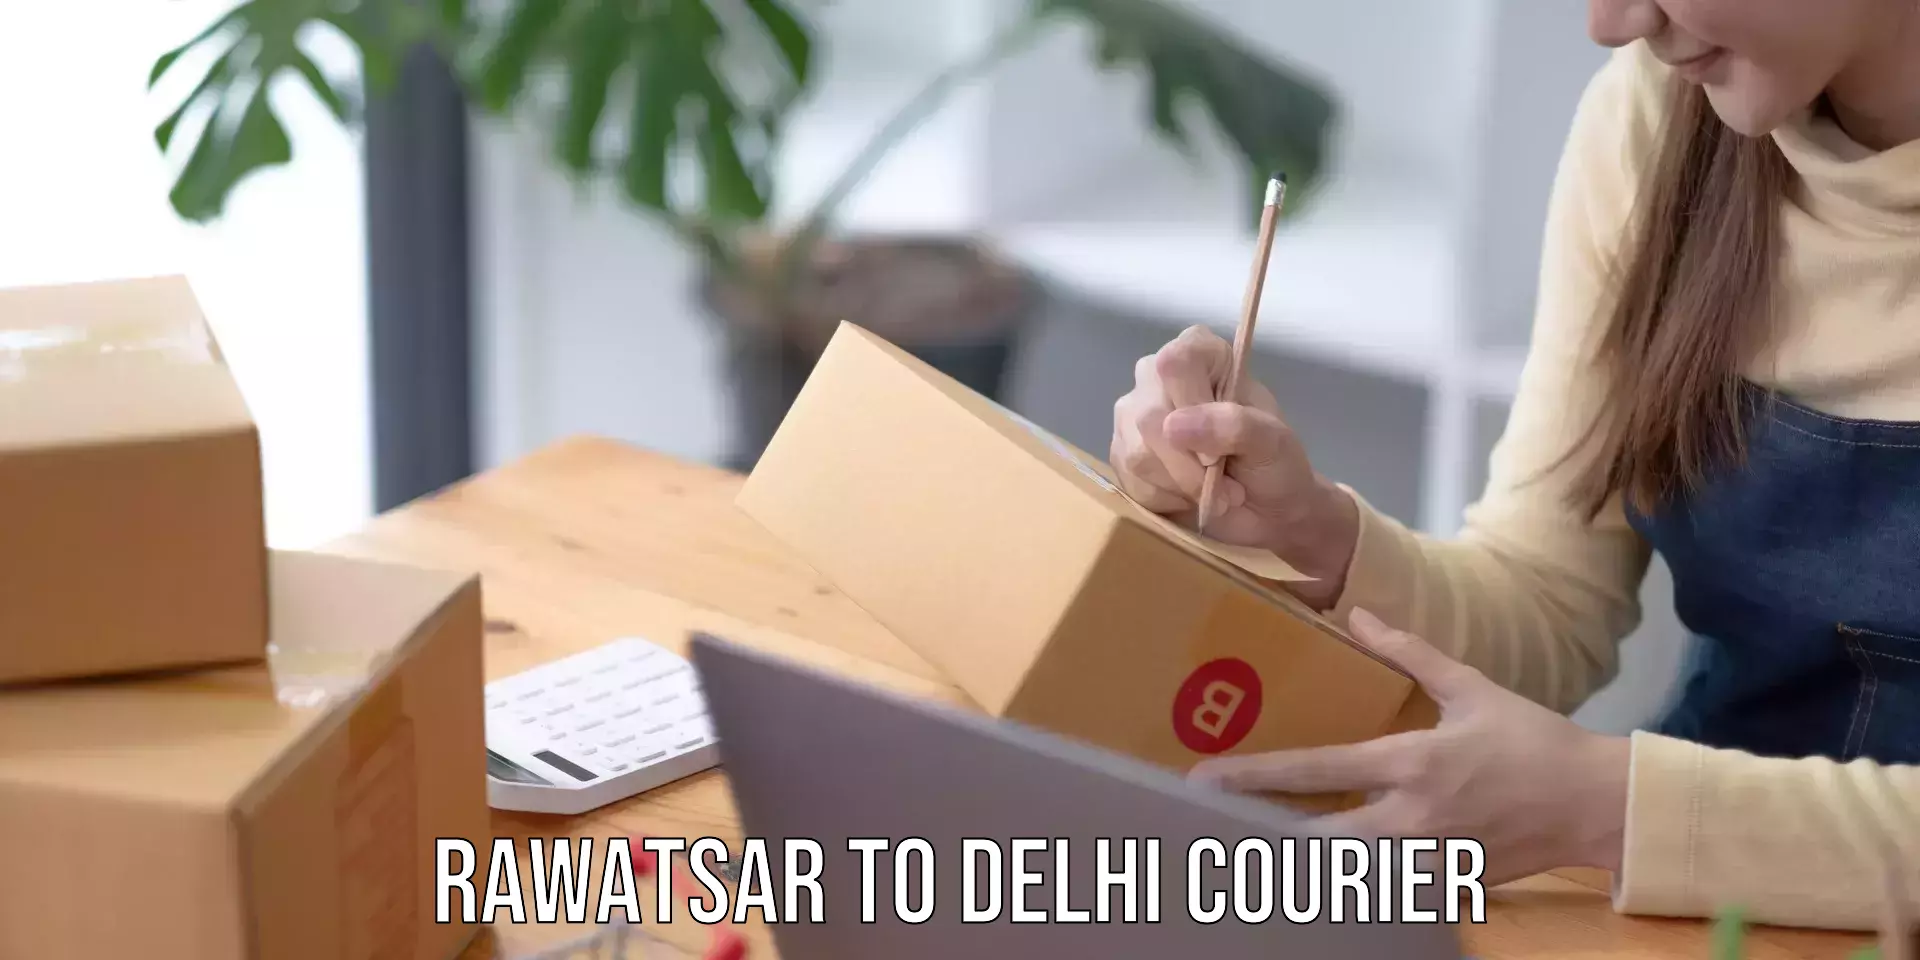 Courier service comparison Rawatsar to Delhi